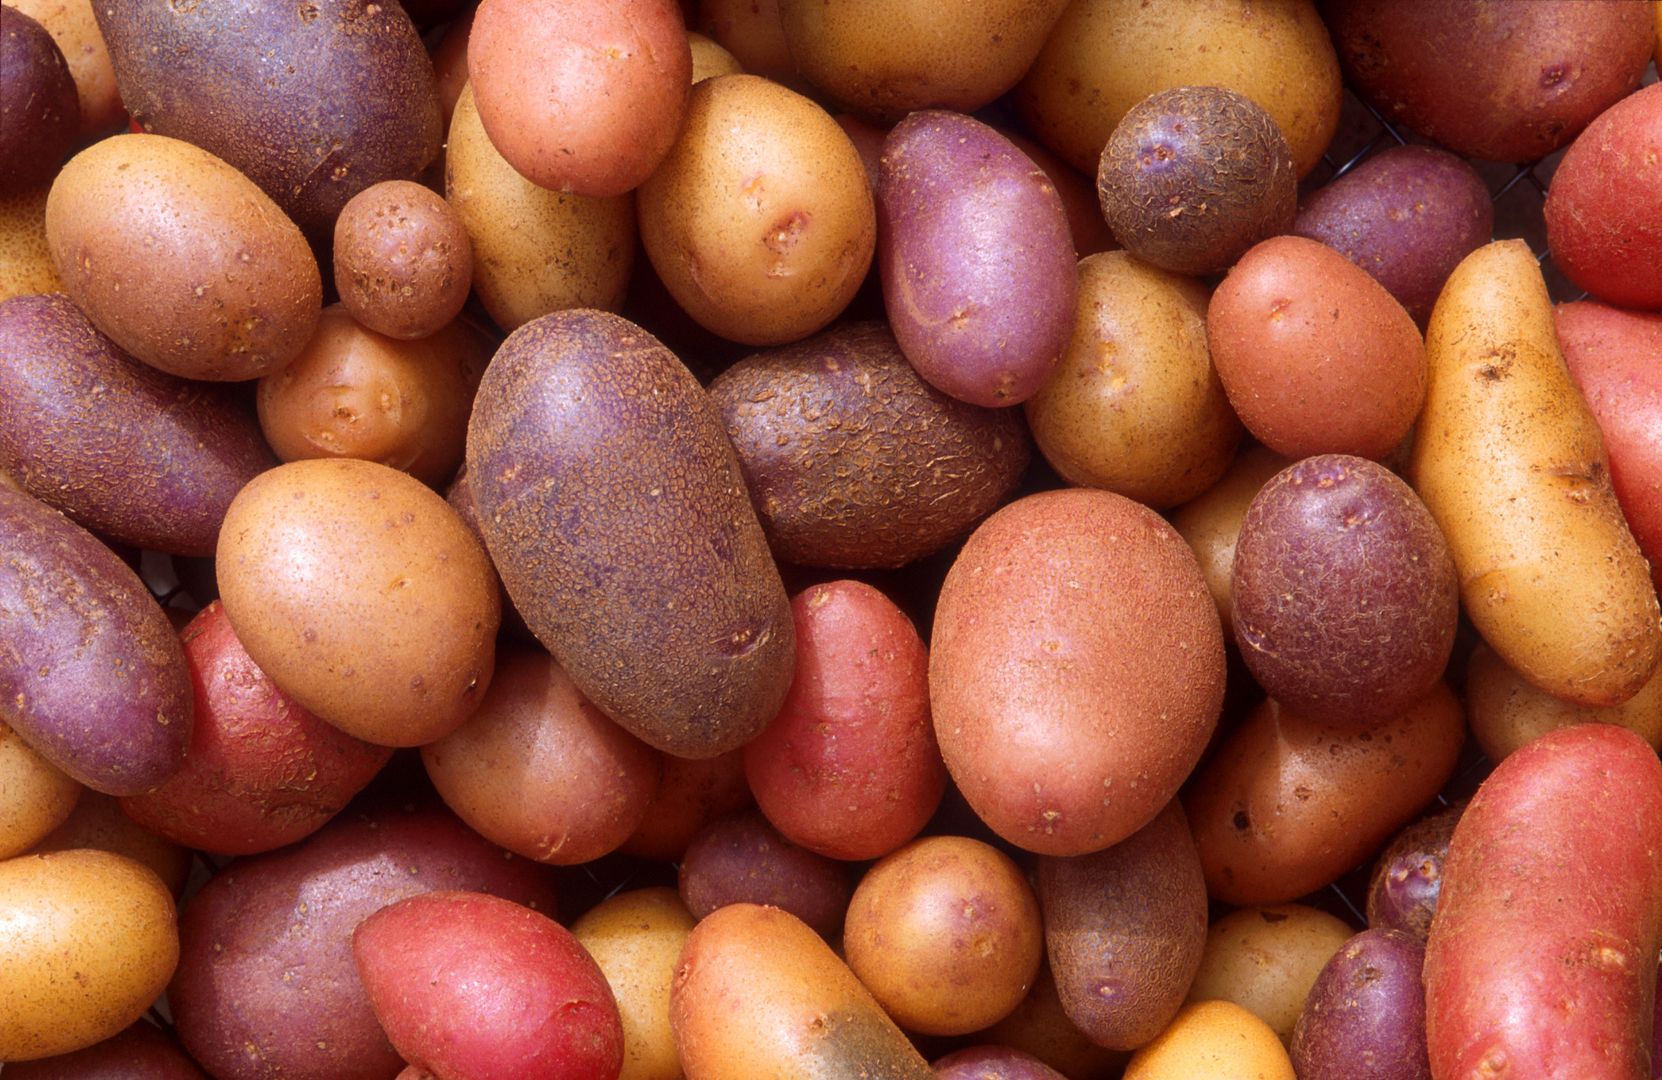 Jedzenie ziemniaków zmniejsza ryzyko zachorowania na raka żołądka.